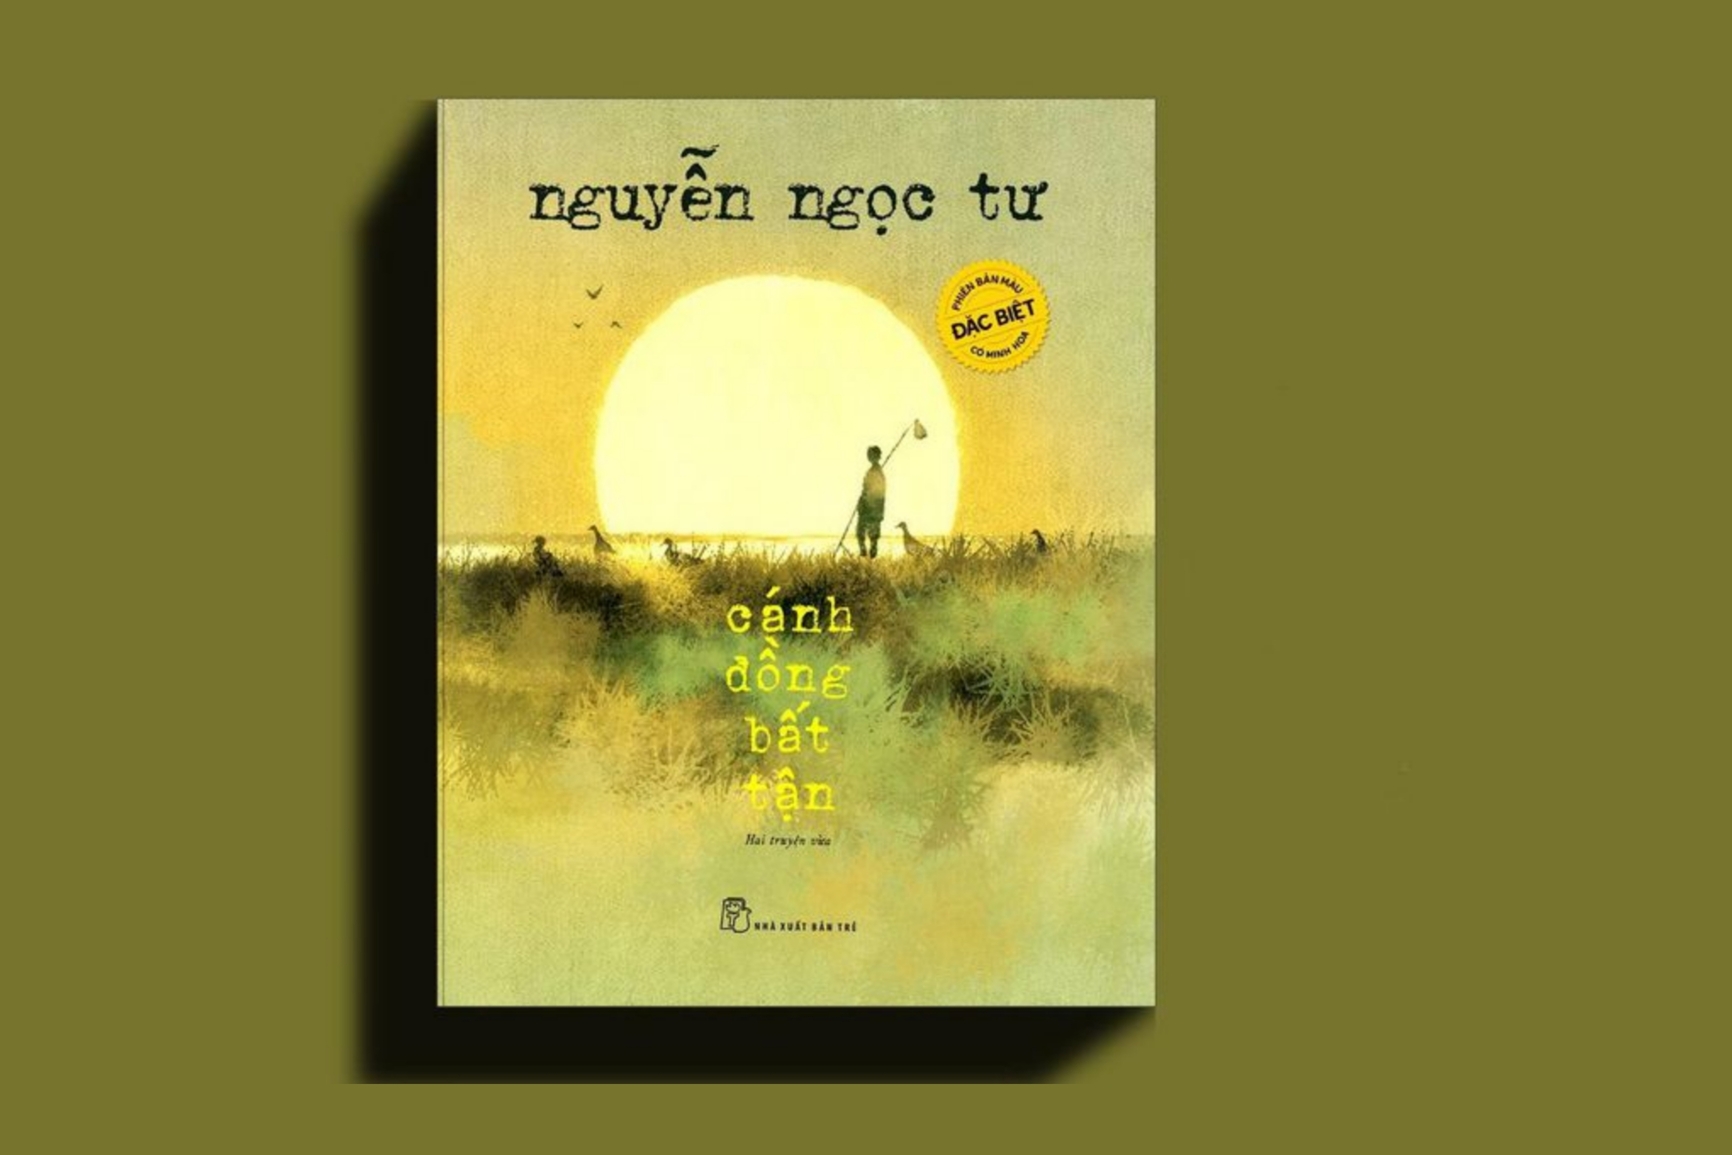 Phát hành sách của Nguyễn Nhật Ánh, Nguyễn Ngọc Tư, Nguyễn Ngọc Thuần phiên bản đặc biệt